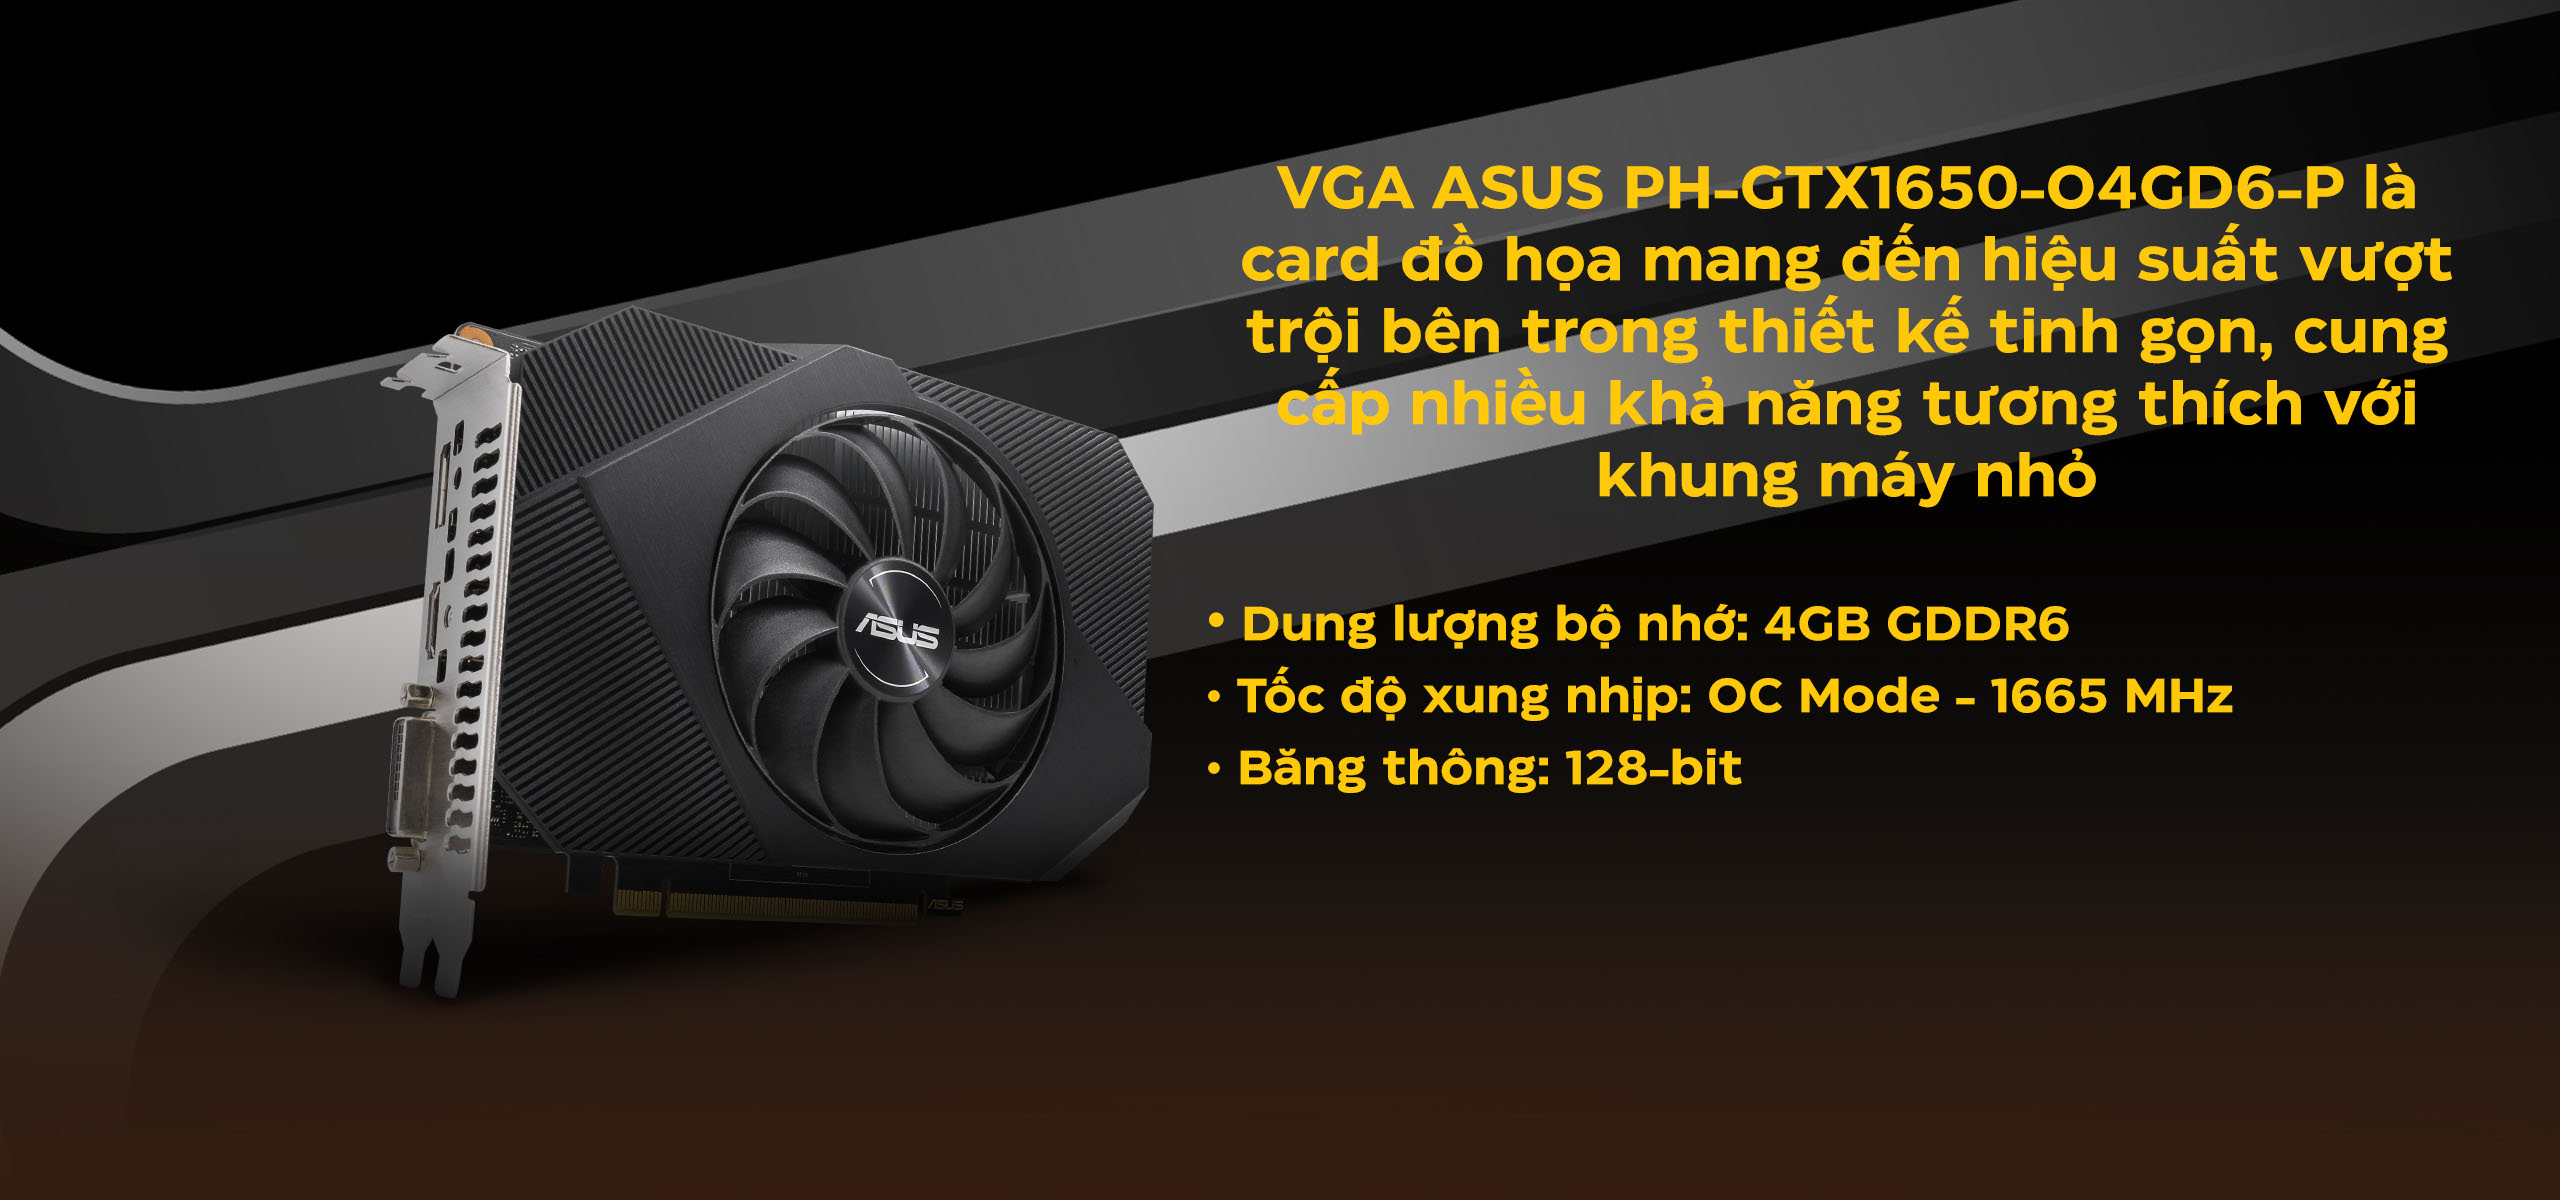 Card màn hình Asus PH-GTX 1650-O4GD6-P